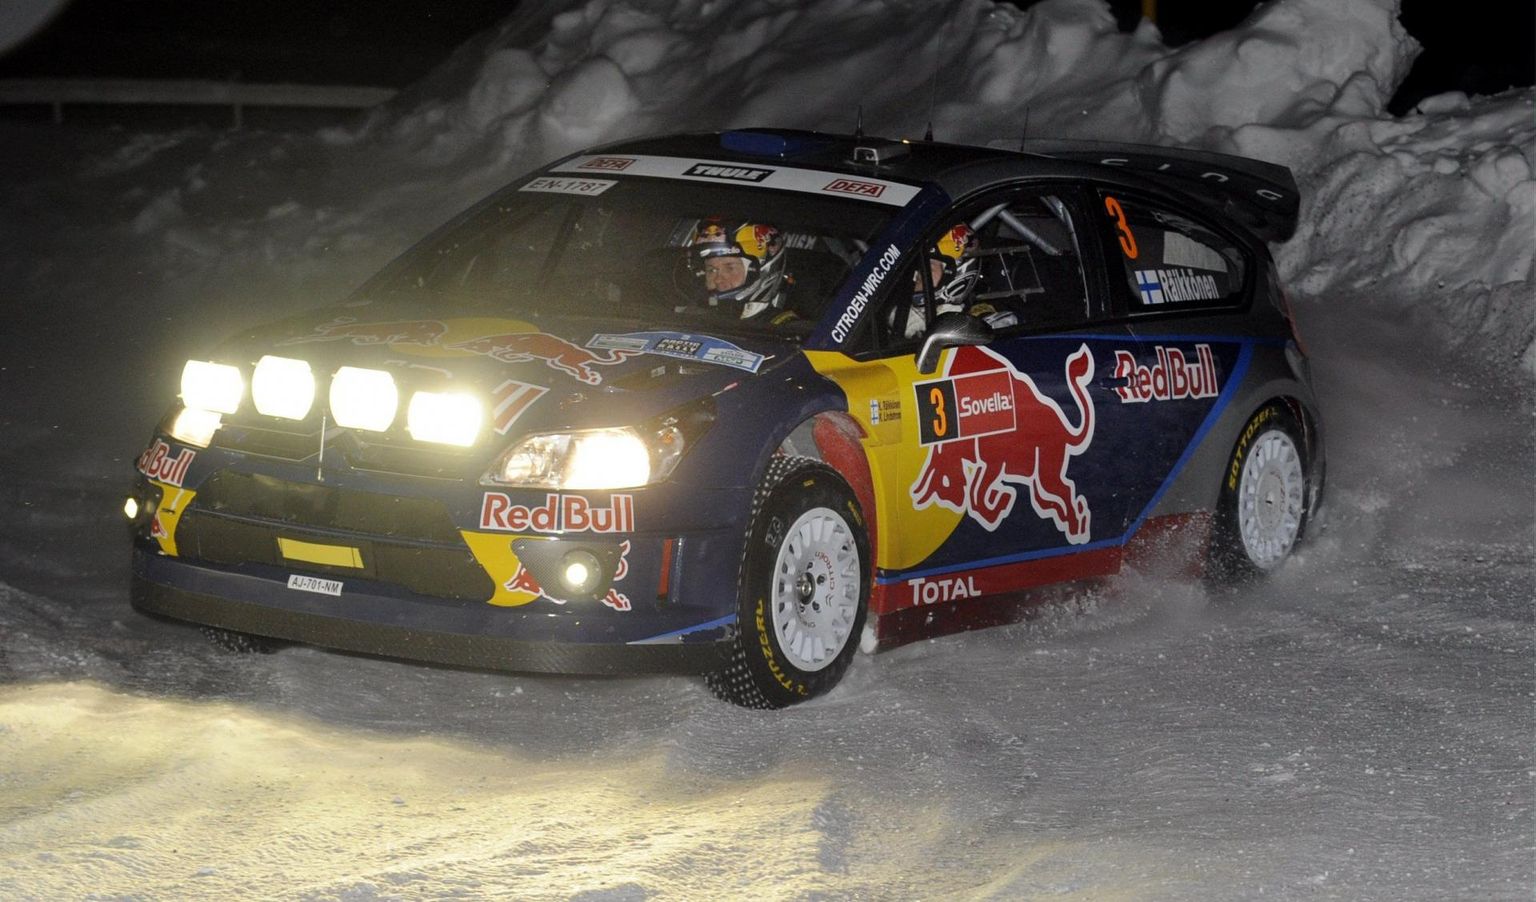 Arctic Rally lumevalle ja suurt kiirust on nautinud ka F1-sarjast tuntud Kimi Räikkönen (pildil) ja Valtteri Bottas.